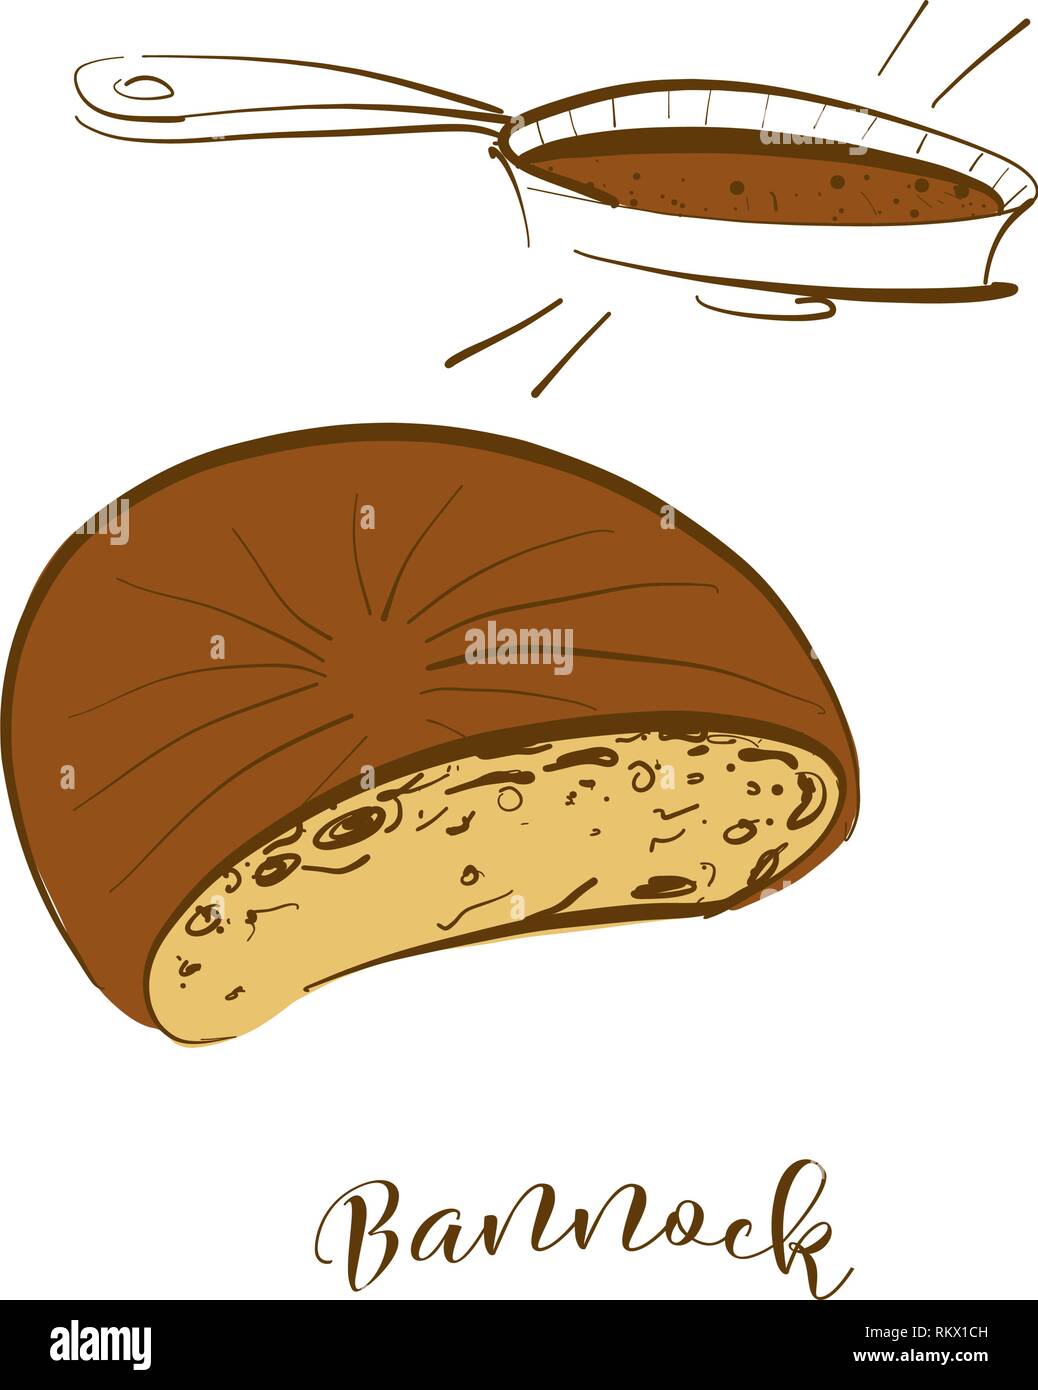 Farbige Skizzen von Bannock Brot. Vektor Zeichnung von Fladenbrot Essen, in der Regel in Großbritannien, Schottland bekannt. Farbige Brot Abbildung Serie. Stock Vektor